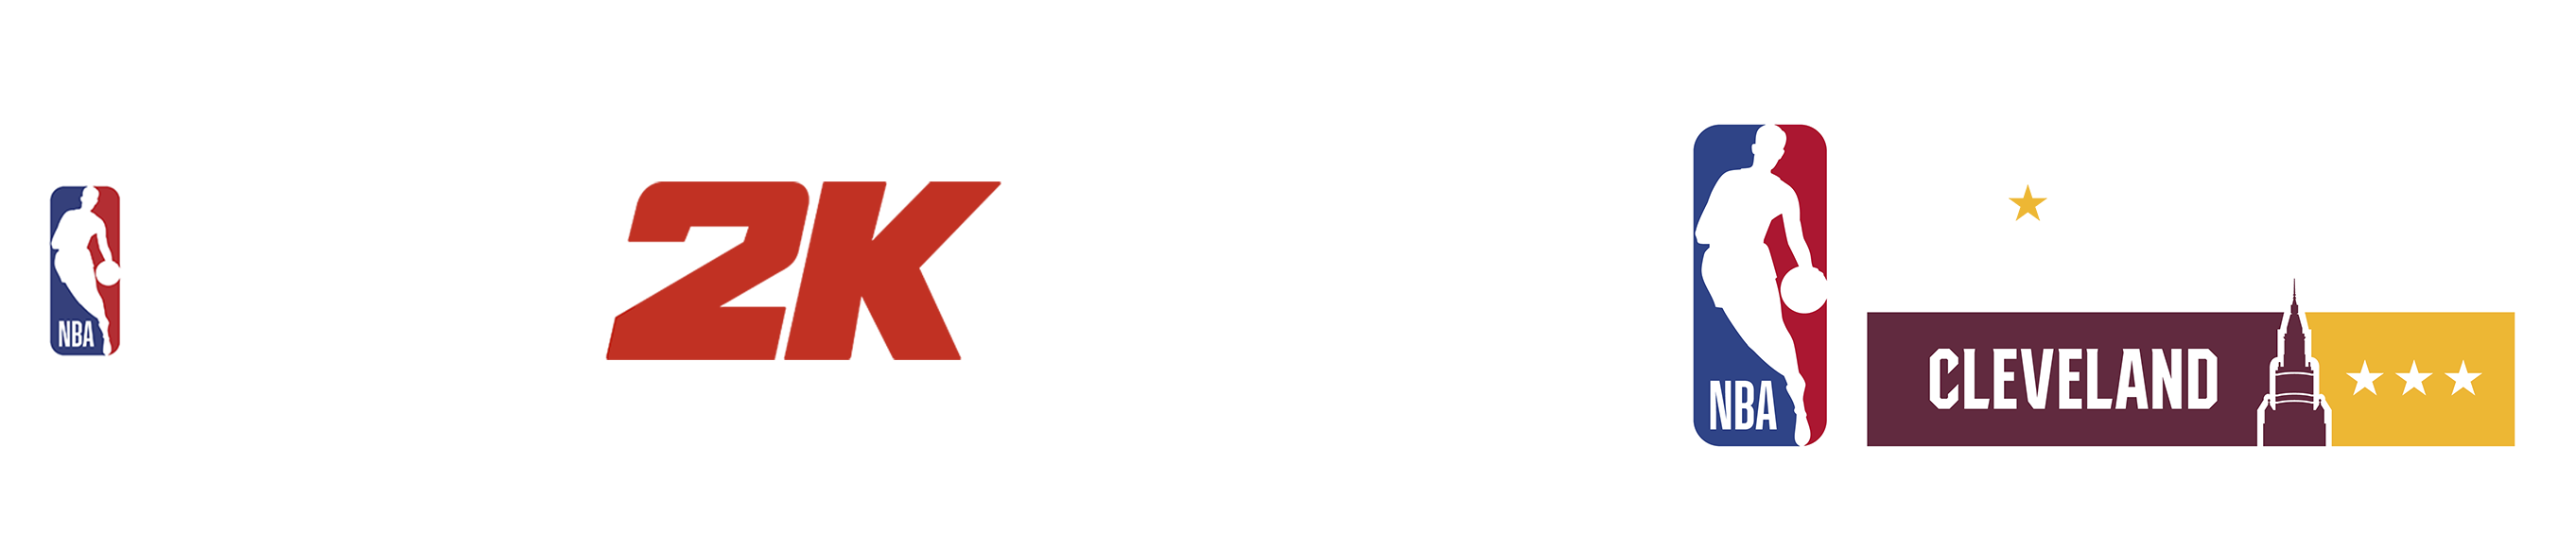 NBA 2K22 logo